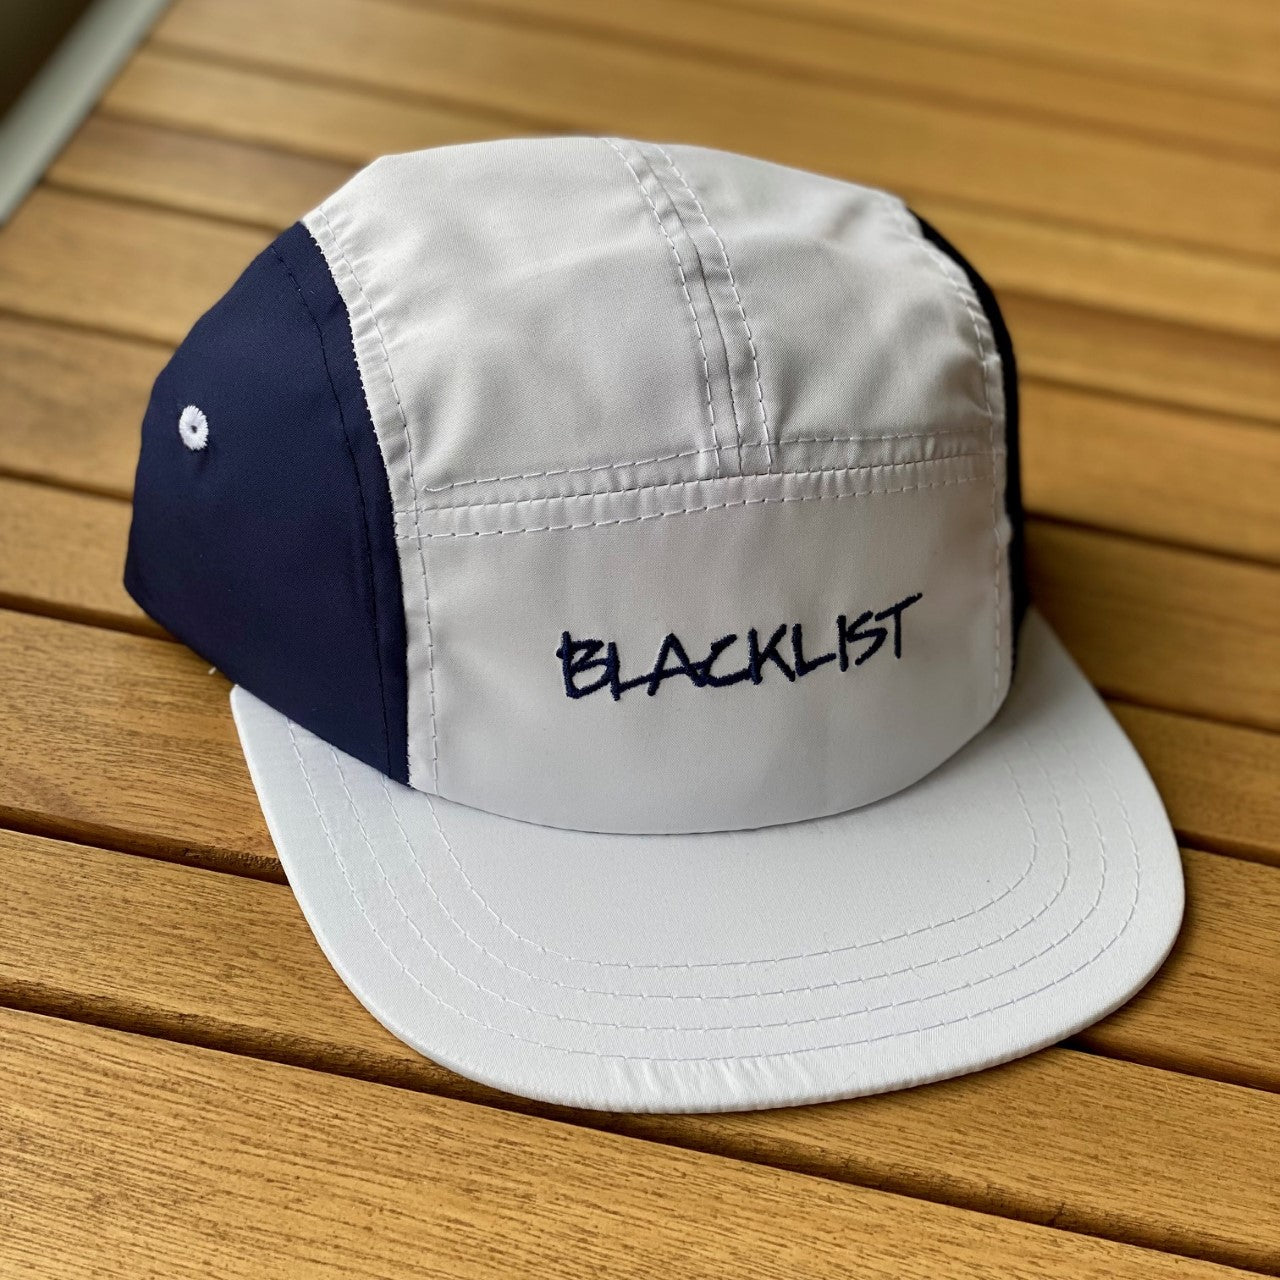 BLACKLISTRIGHTE NYLON 5 PANEL RUNNER CAP